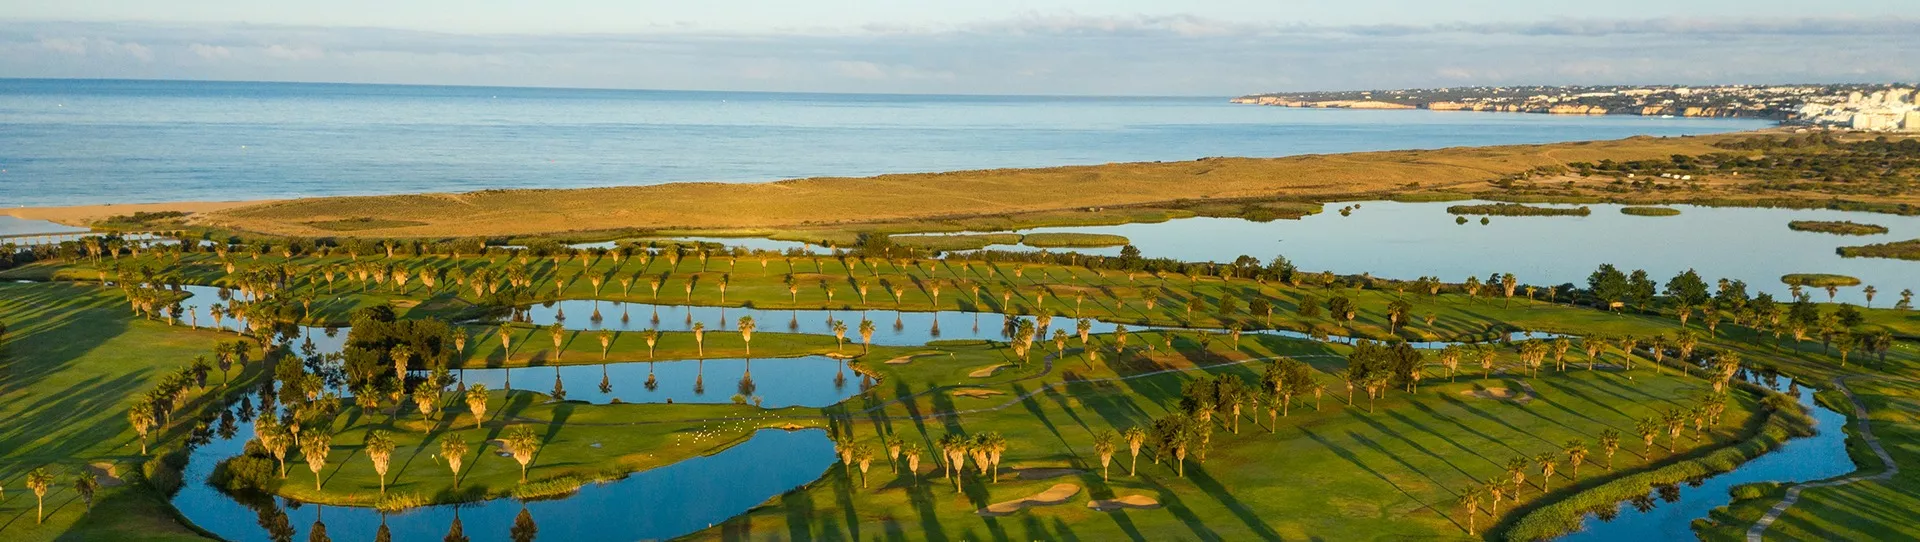 Portugal golf courses - Salgados Golf Course - Photo 1